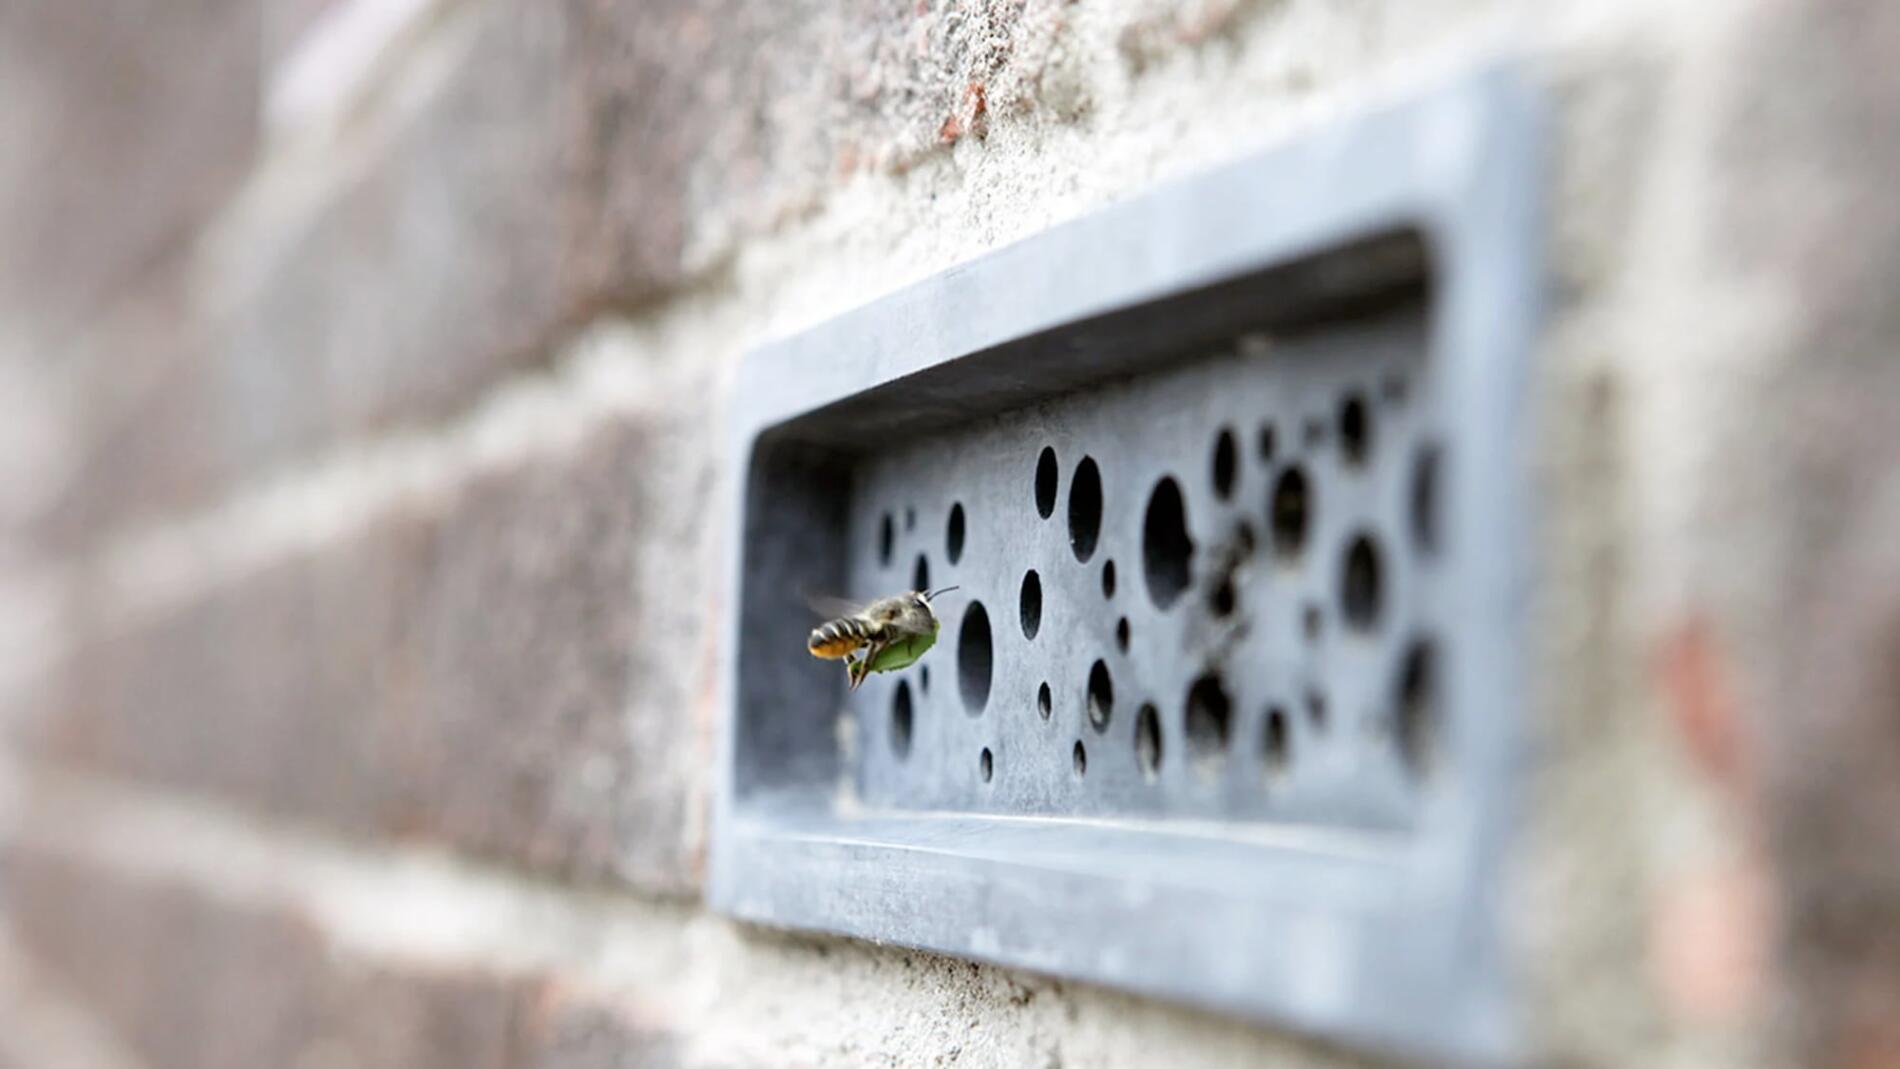 arquitectura diminta para dar hogar a las abejas solitarias green & blue